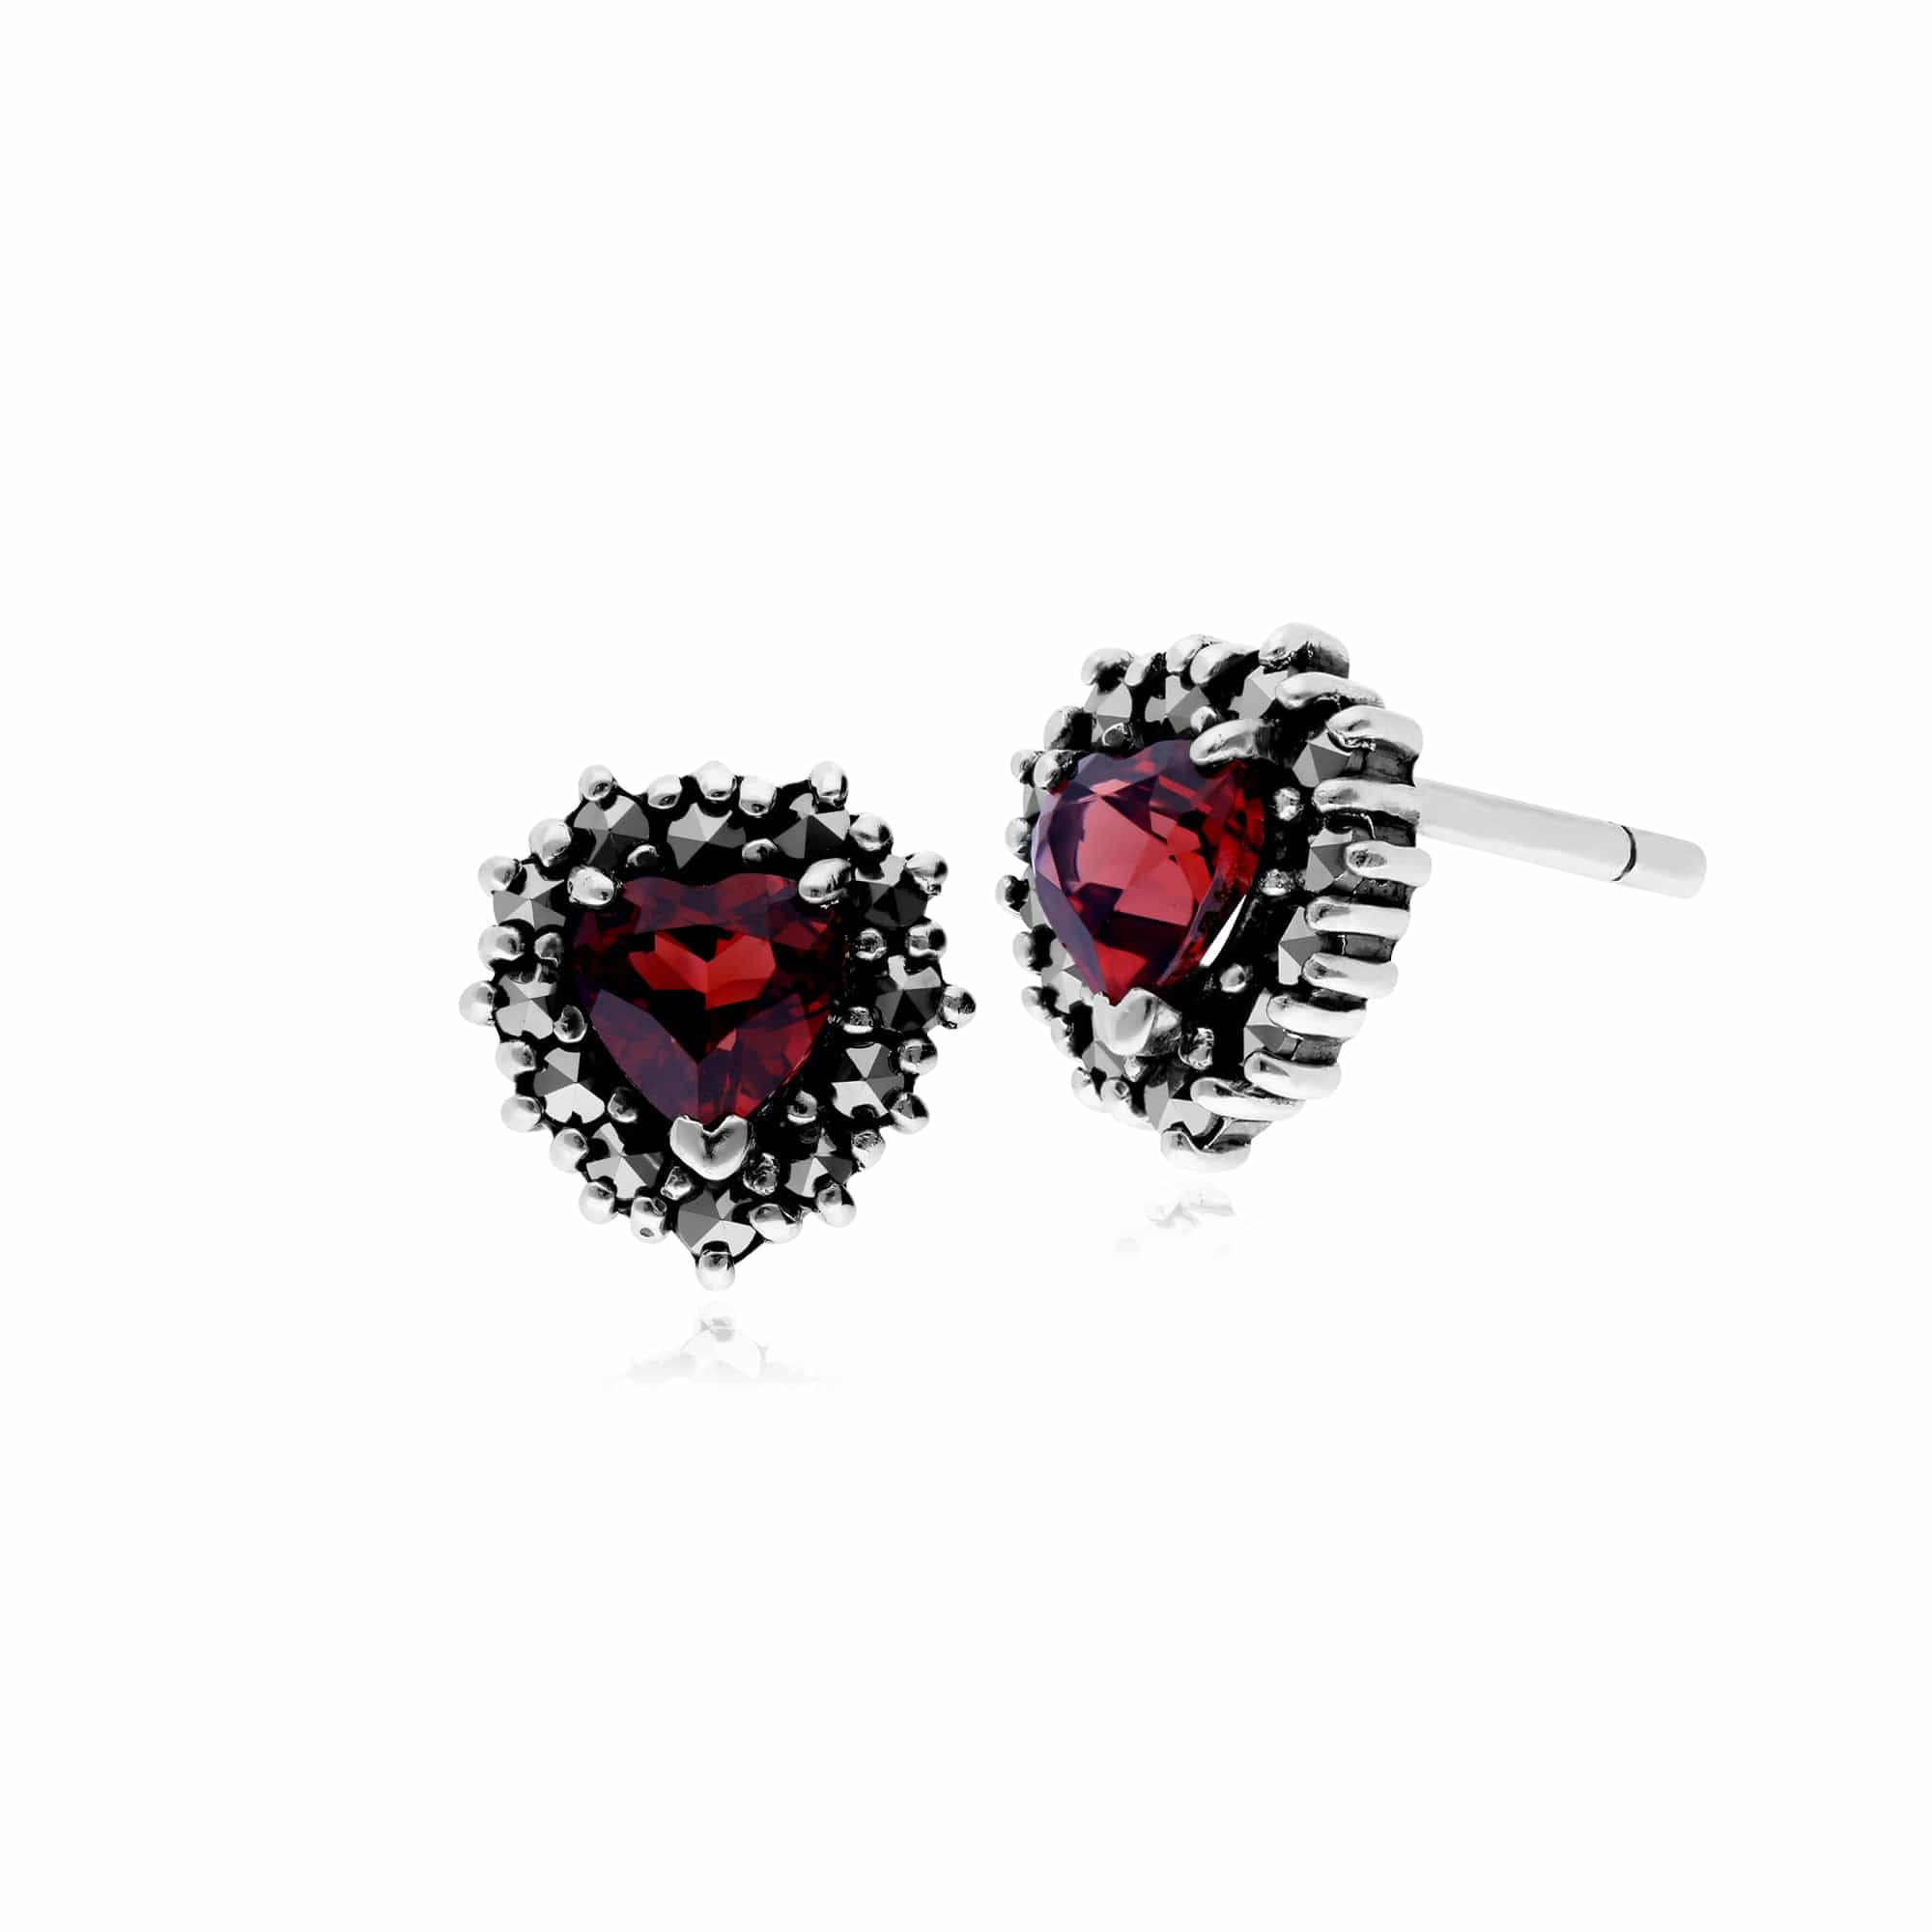 Classic Heart Garnet & Marcasite Halo Heart Stud Earrings in 925 Sterling Silver - Gemondo